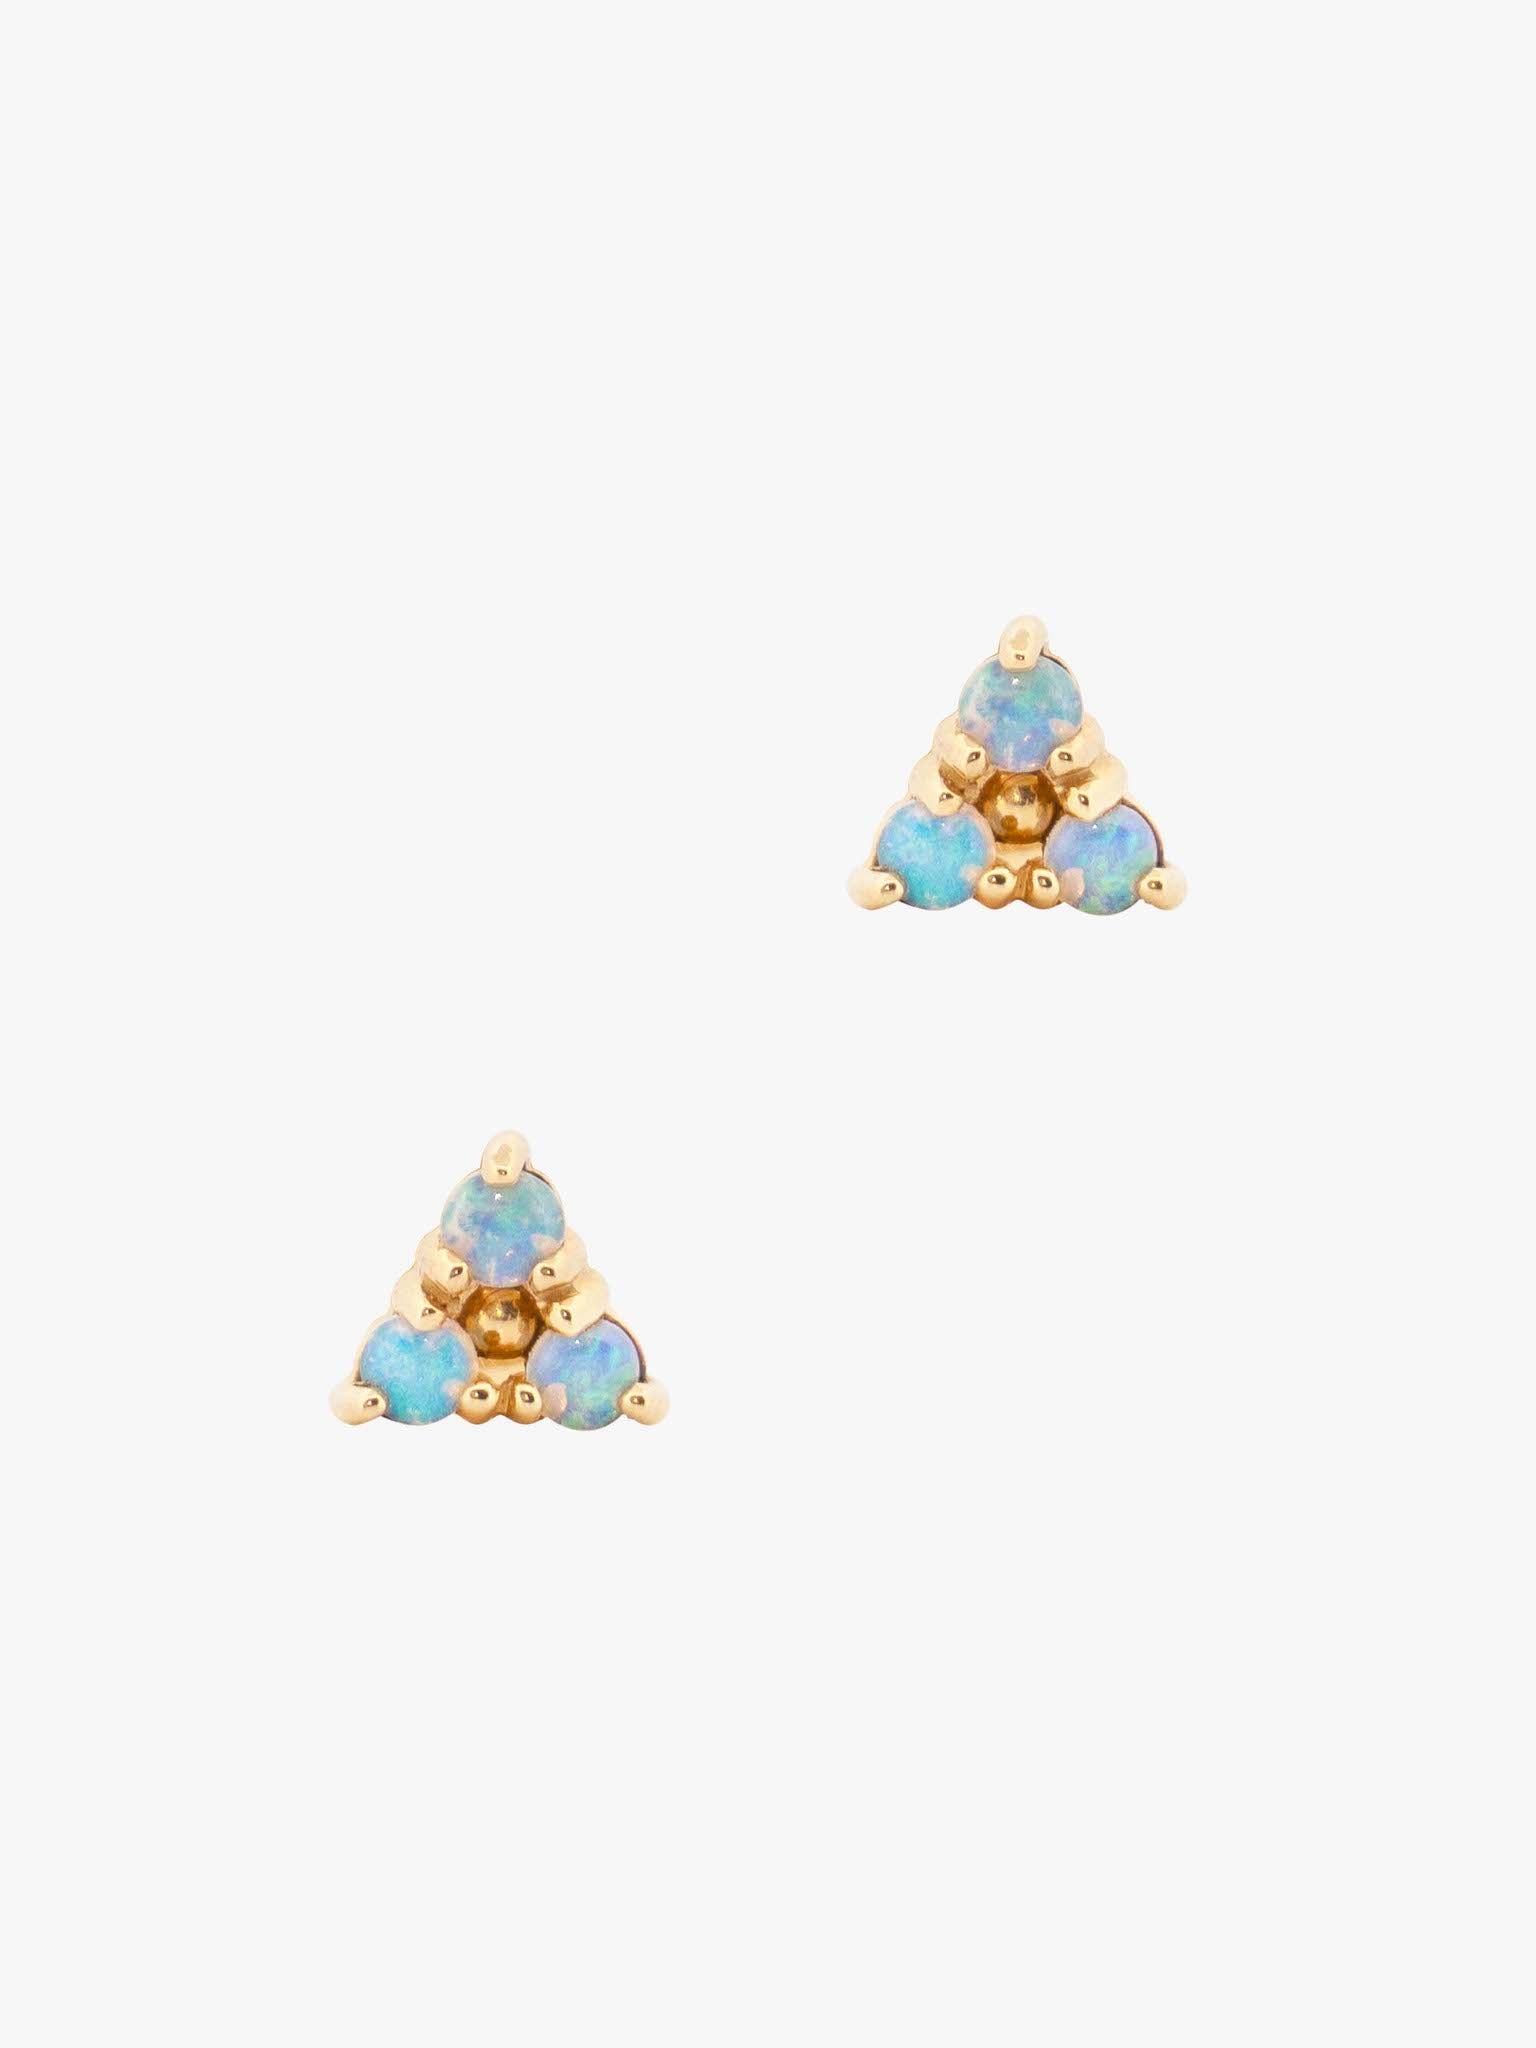 Tri-opal earrings